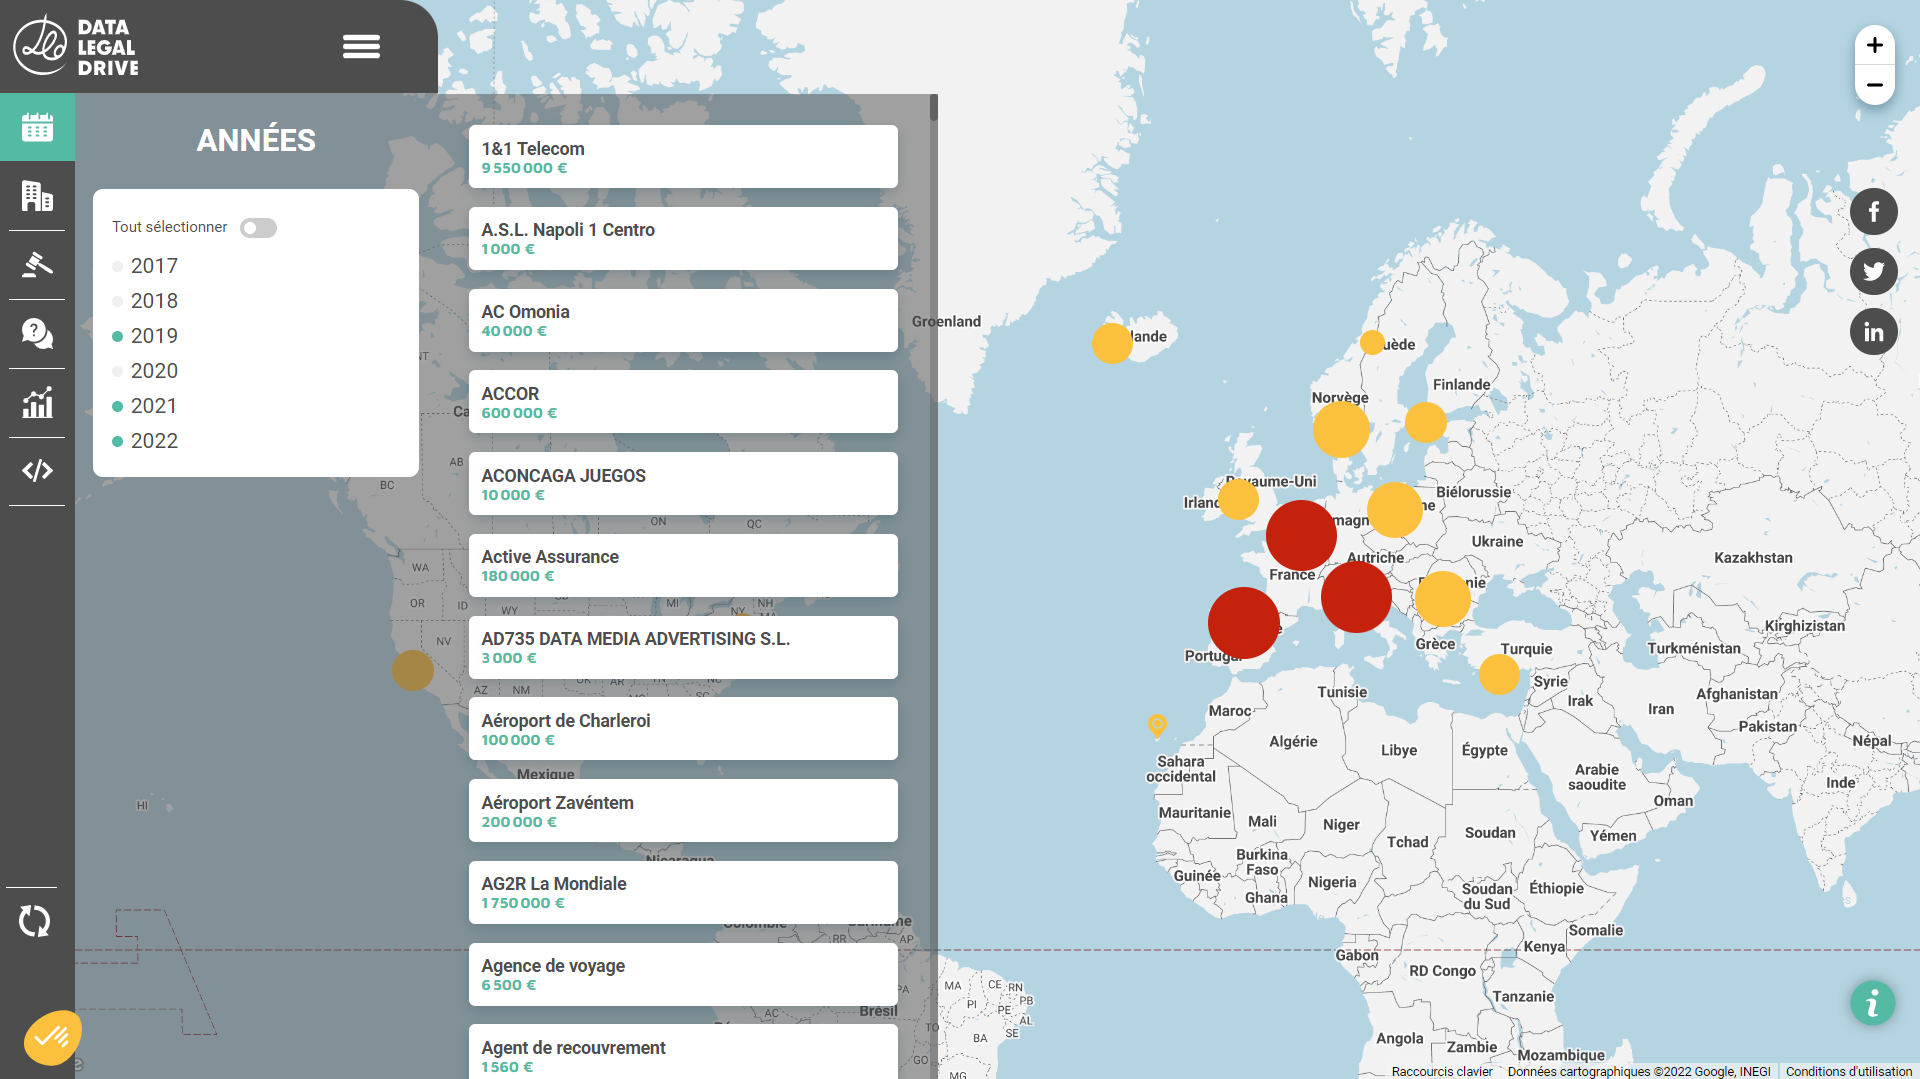 Data Legal Drive - Carte des Sanctions RGPD interactive